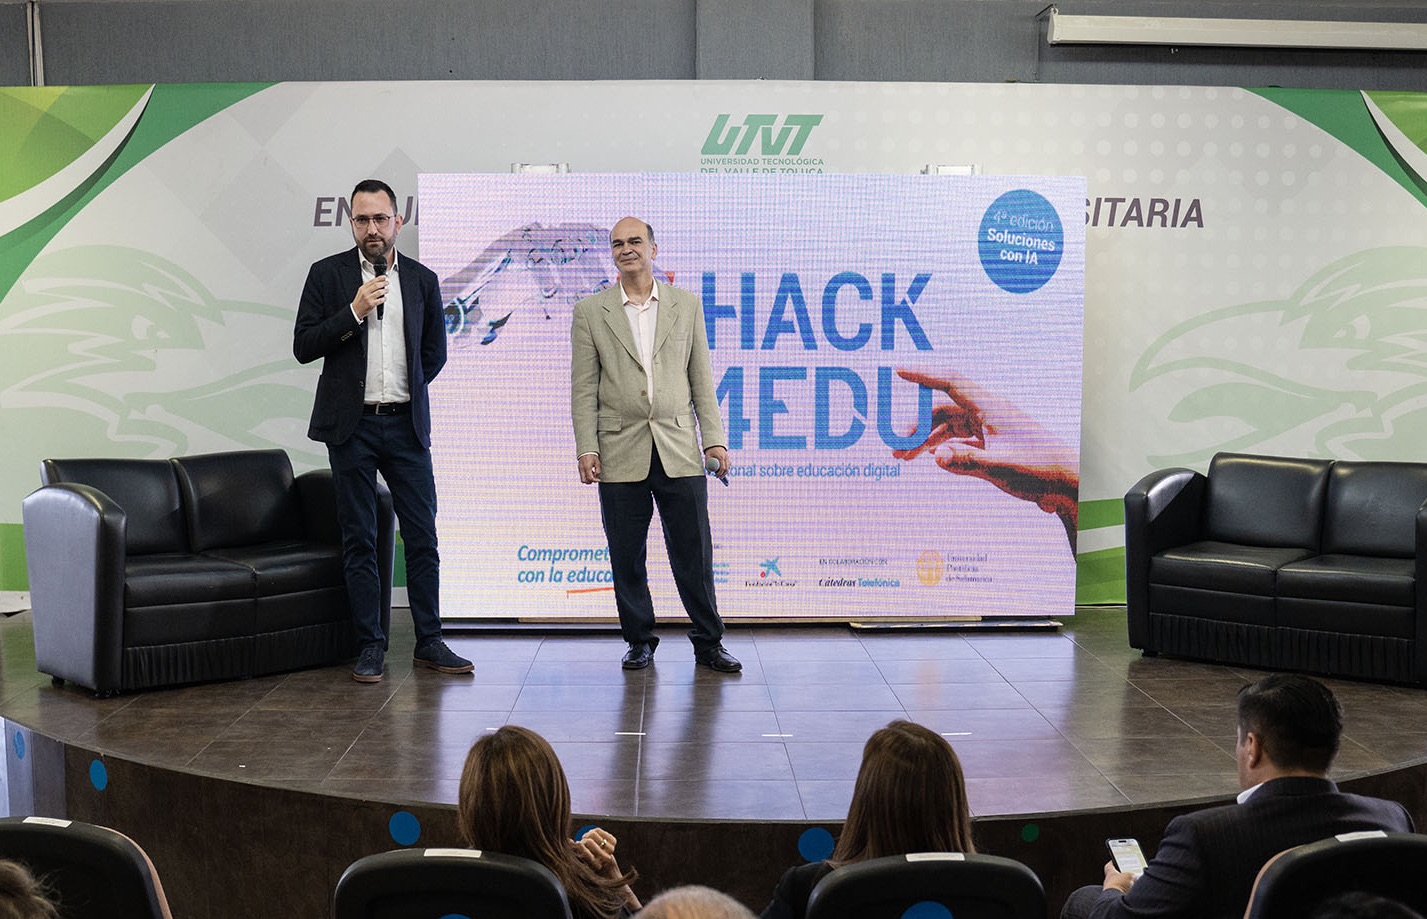 Começa o hackathon internacional #hack4edu: uma oportunidade de transformar a educação digital por meio da inteligência artificial